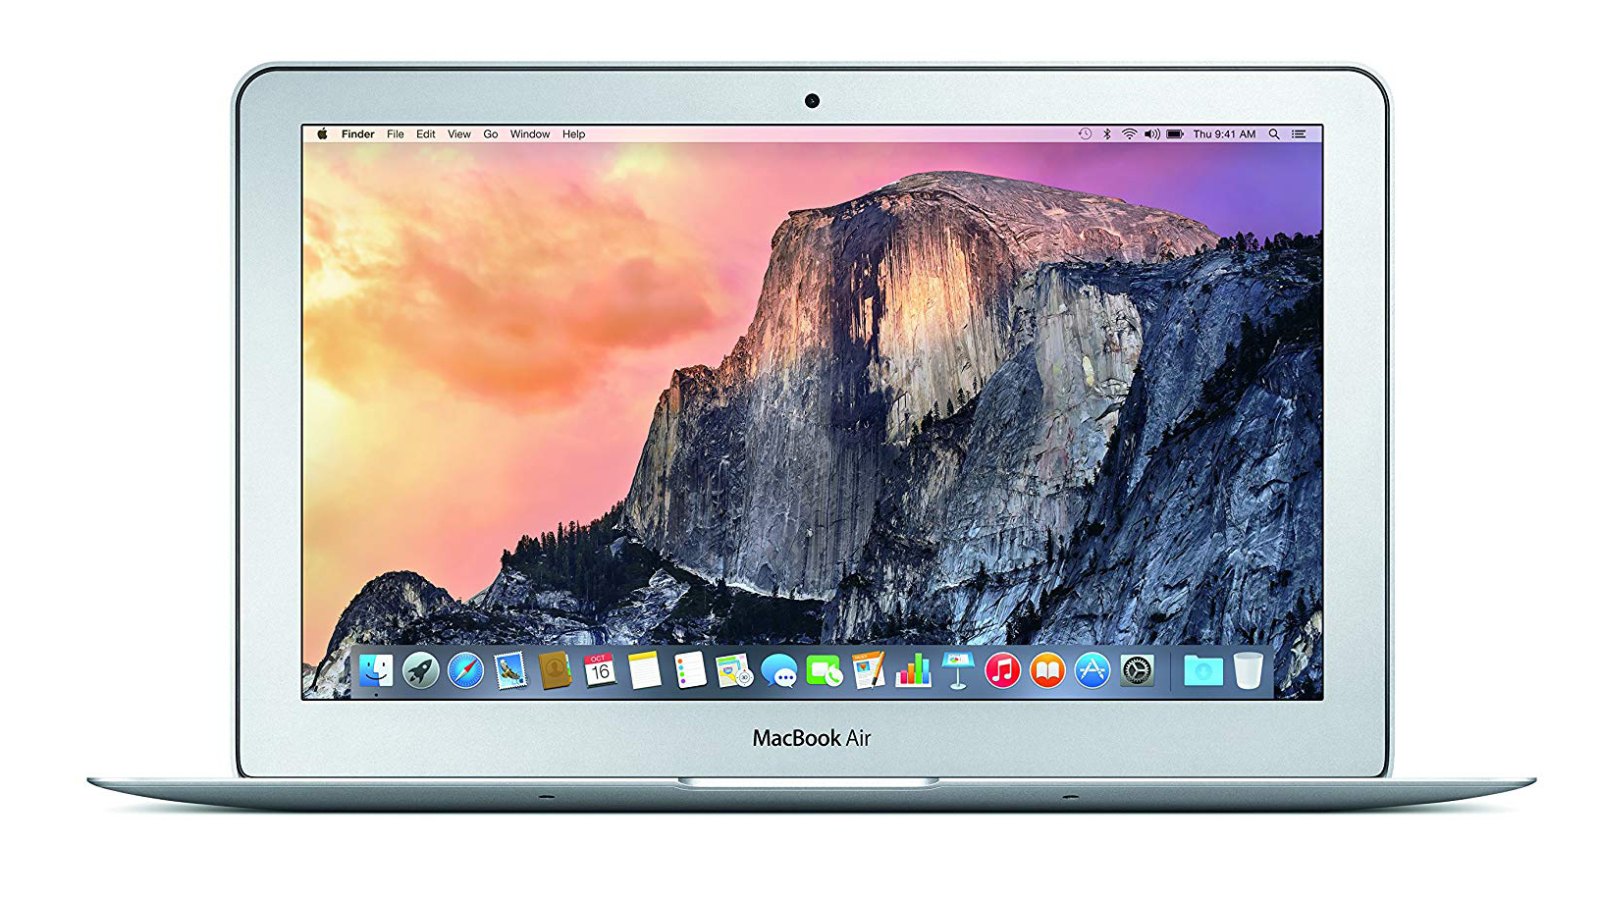 apple macbook on sale